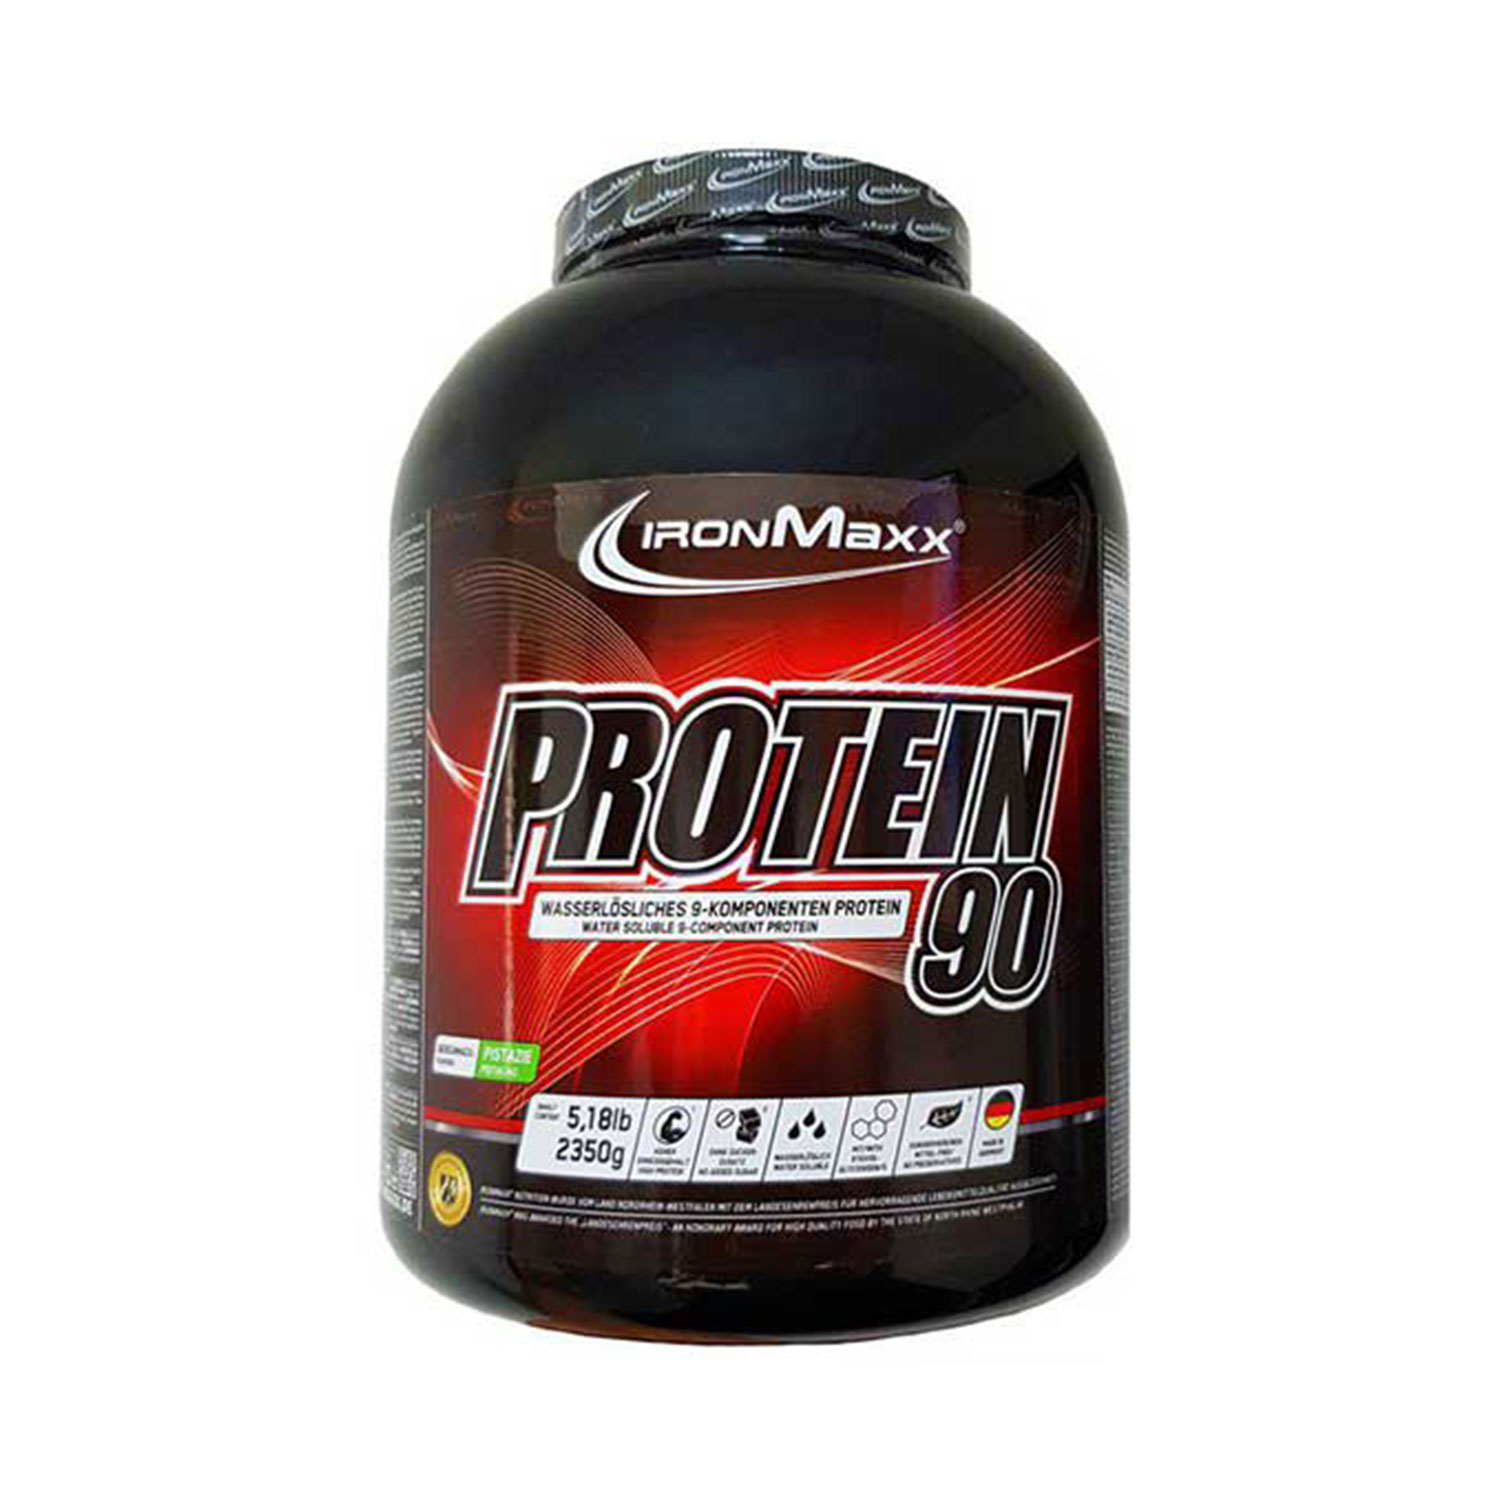 پروتئین 90 آیرون مکس | PROTEIN 90 IRON MAXX